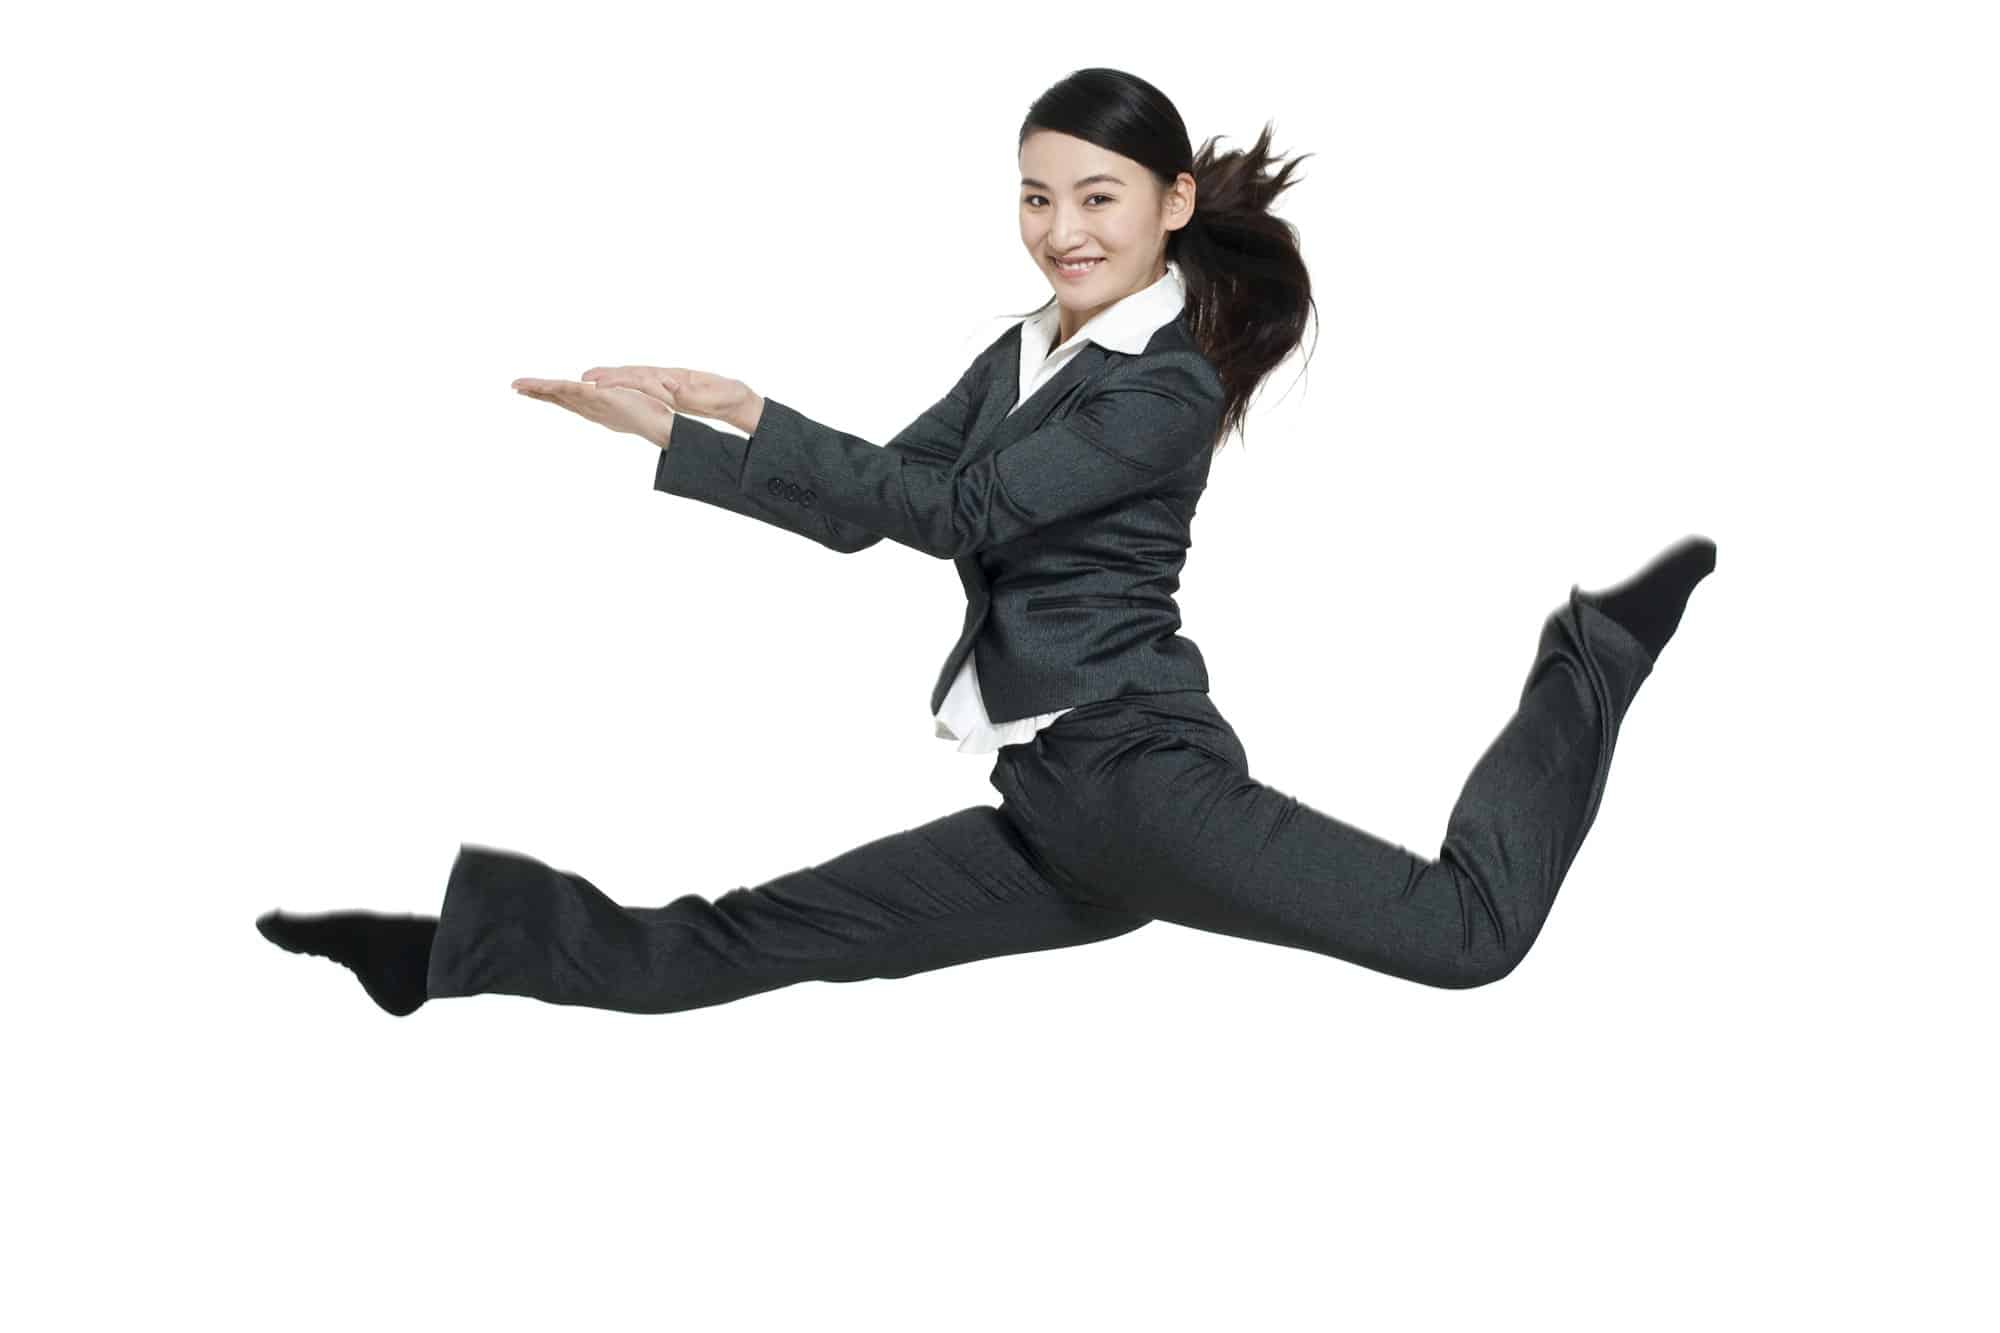 Flex CMO Une femme en costume d'affaires, incarnant l'énergie dynamique d'un CMO Flex, effectue un saut en l'air sur un fond blanc, étendant ses bras et ses jambes.